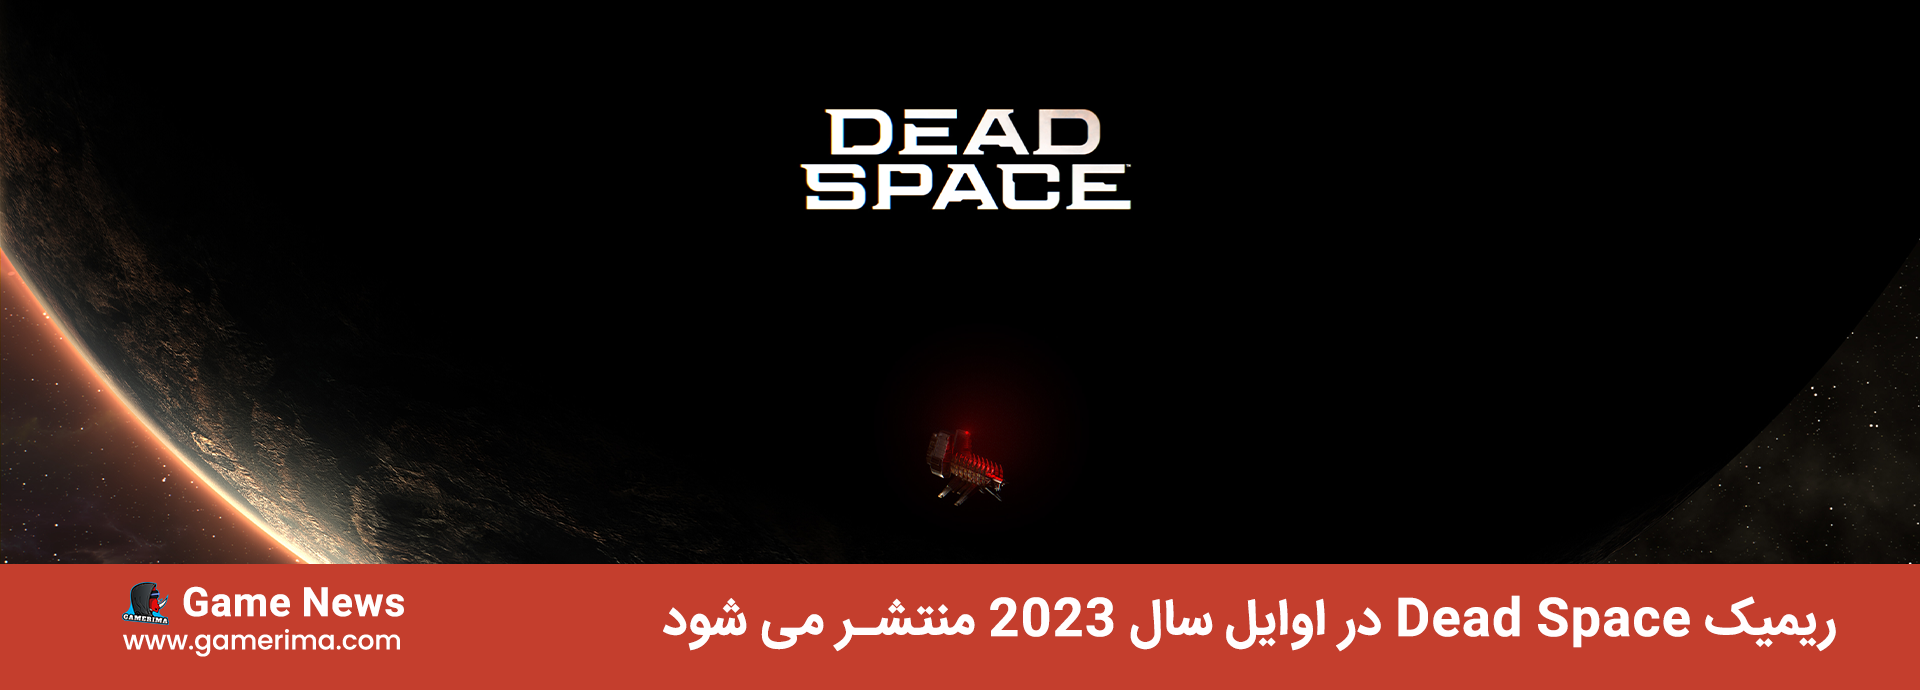 ریمیک Dead Space در اوایل سال ۲۰۲۳ منتشر می شود